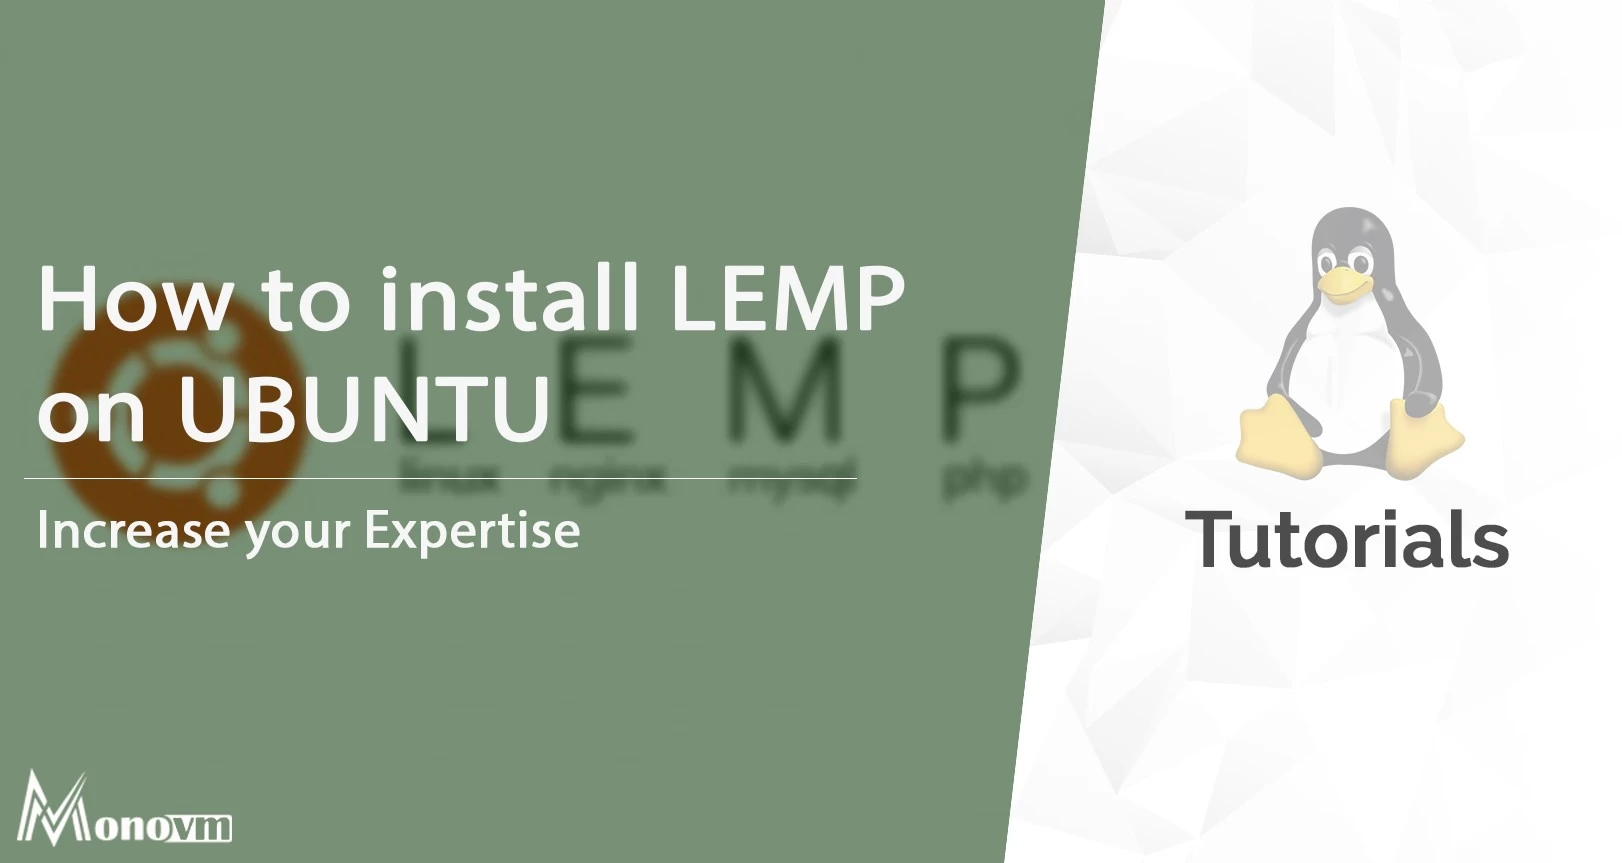 How to install LEMP on Ubuntu 18.04